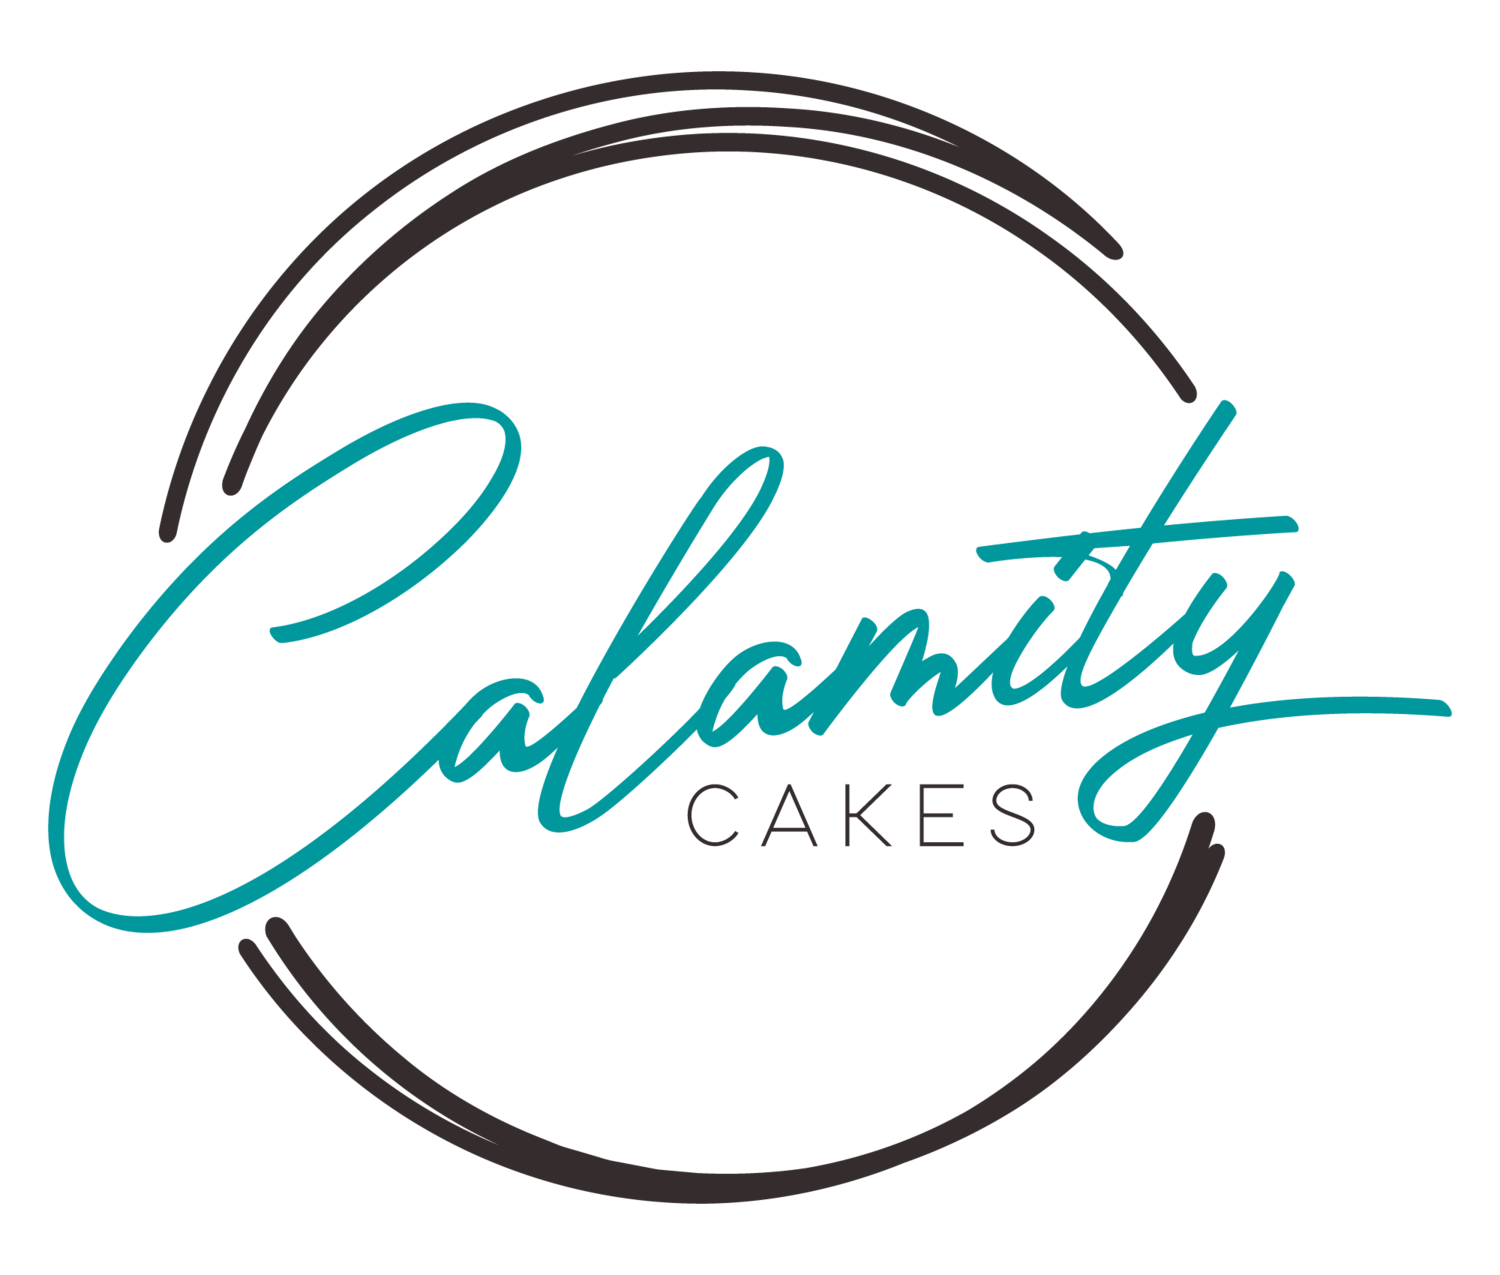 Calamity Cakes